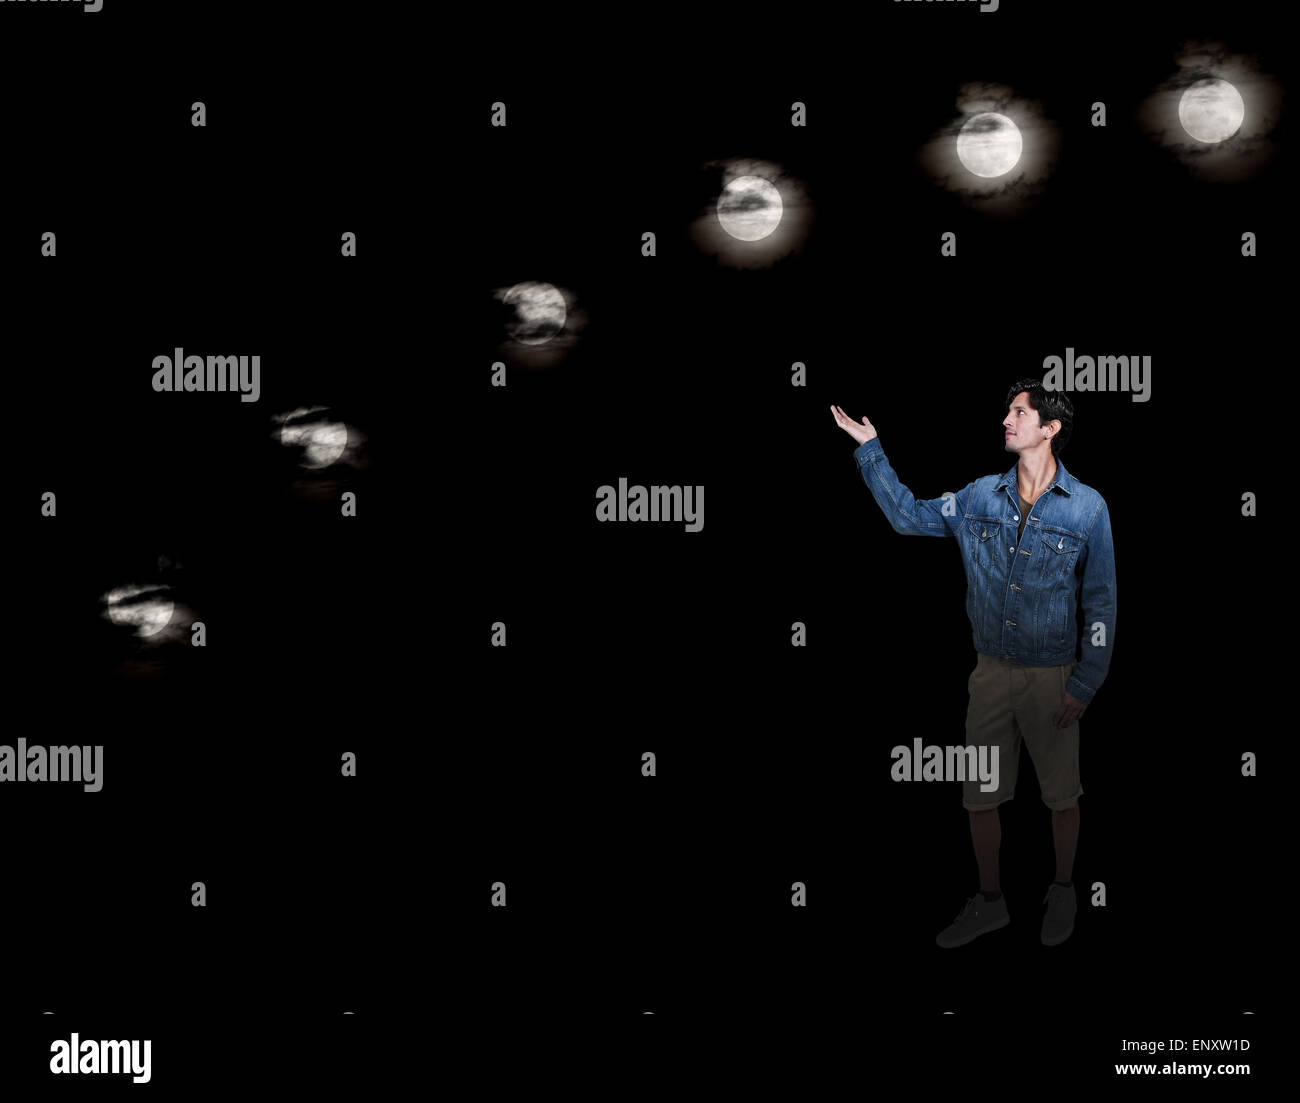 Planetario proyector sky Fotografía de stock - Alamy